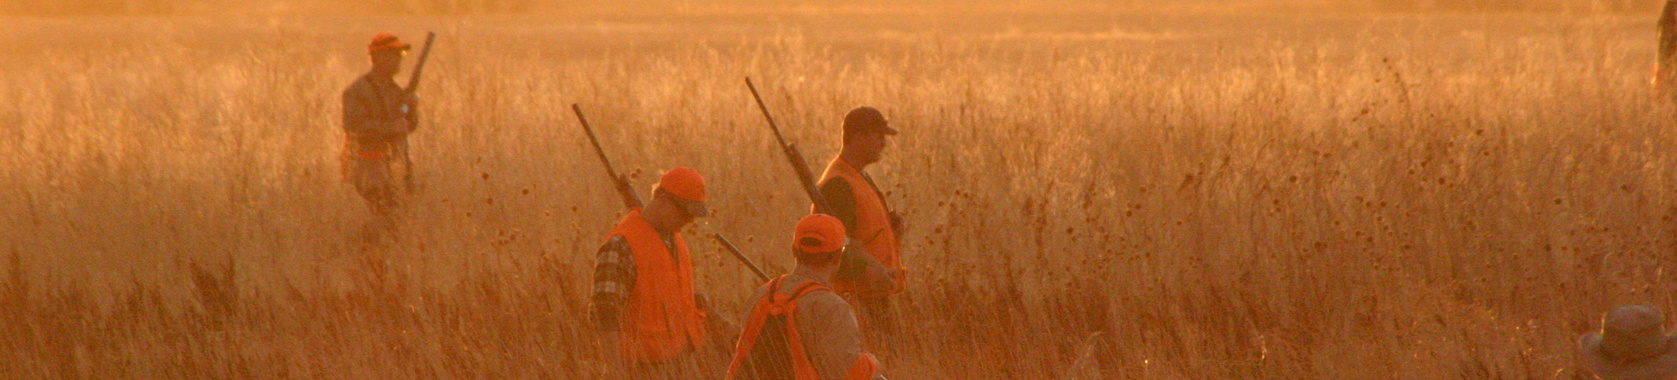 Hunters Walking a Field in South Dakota